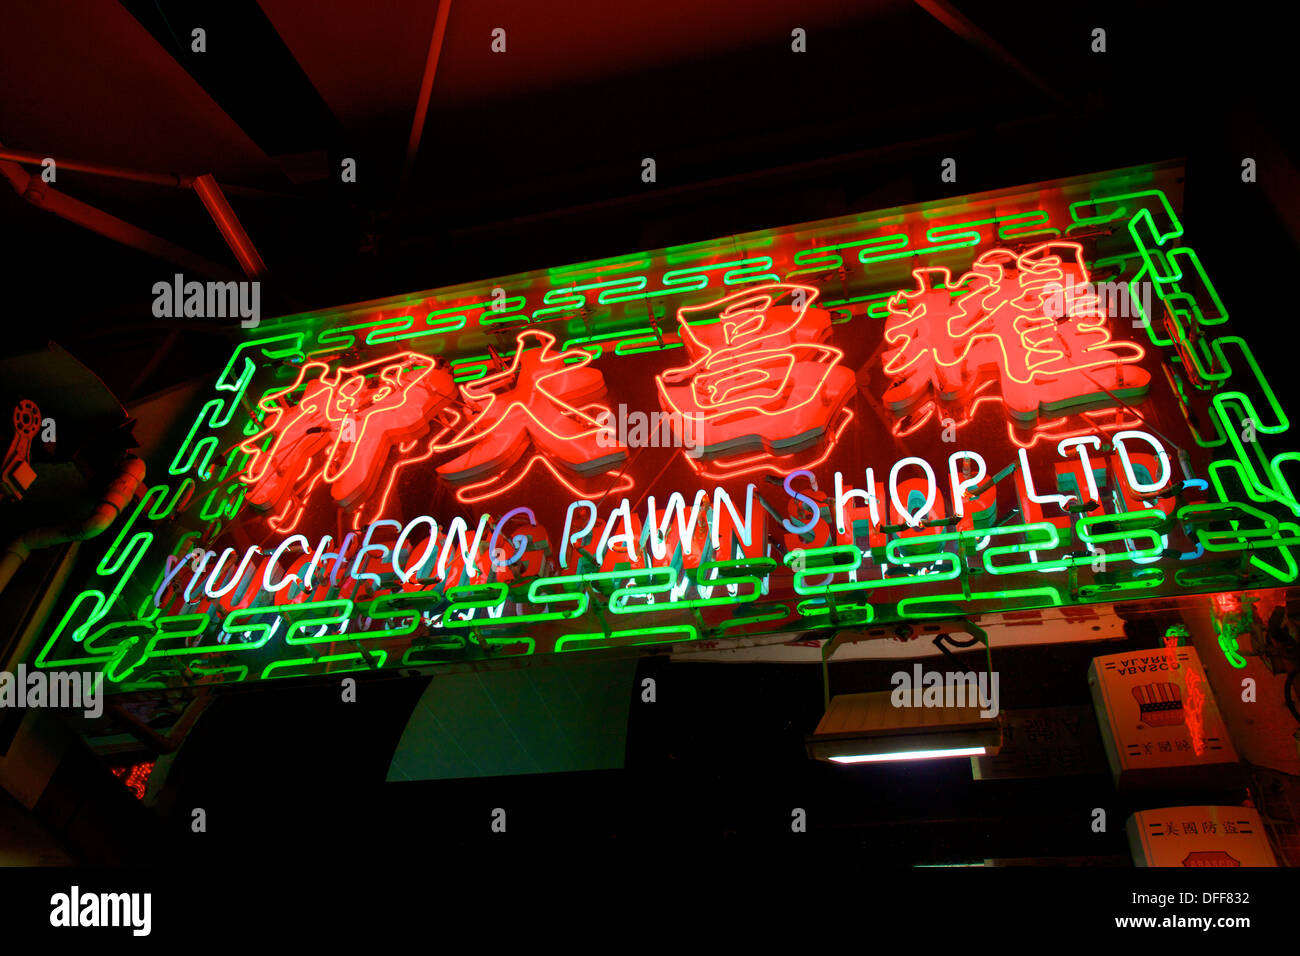 Pawn Shop, Hong Kong, China, South East Asia, Stock Photo